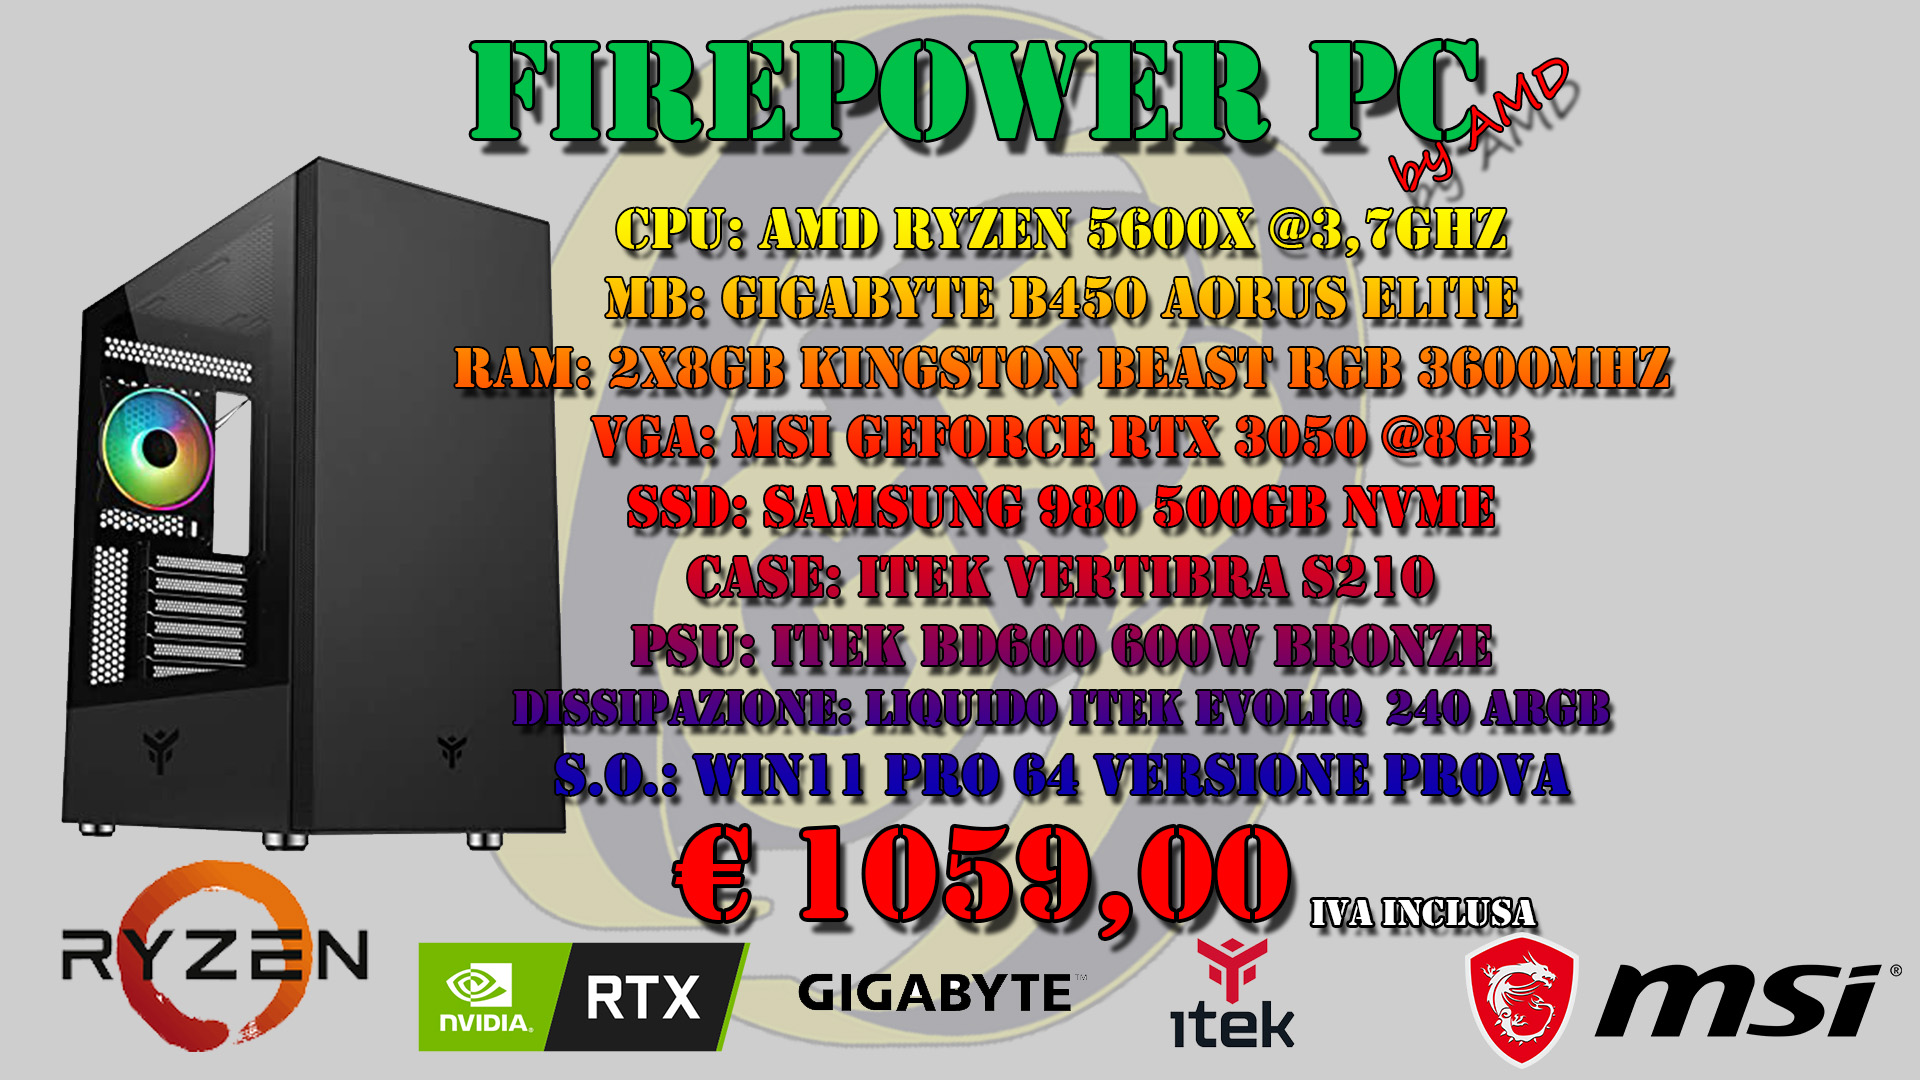 FIREPOWER PC by AMD RTX 3050 *DISPONIBILE SU ORDINAZIONE*